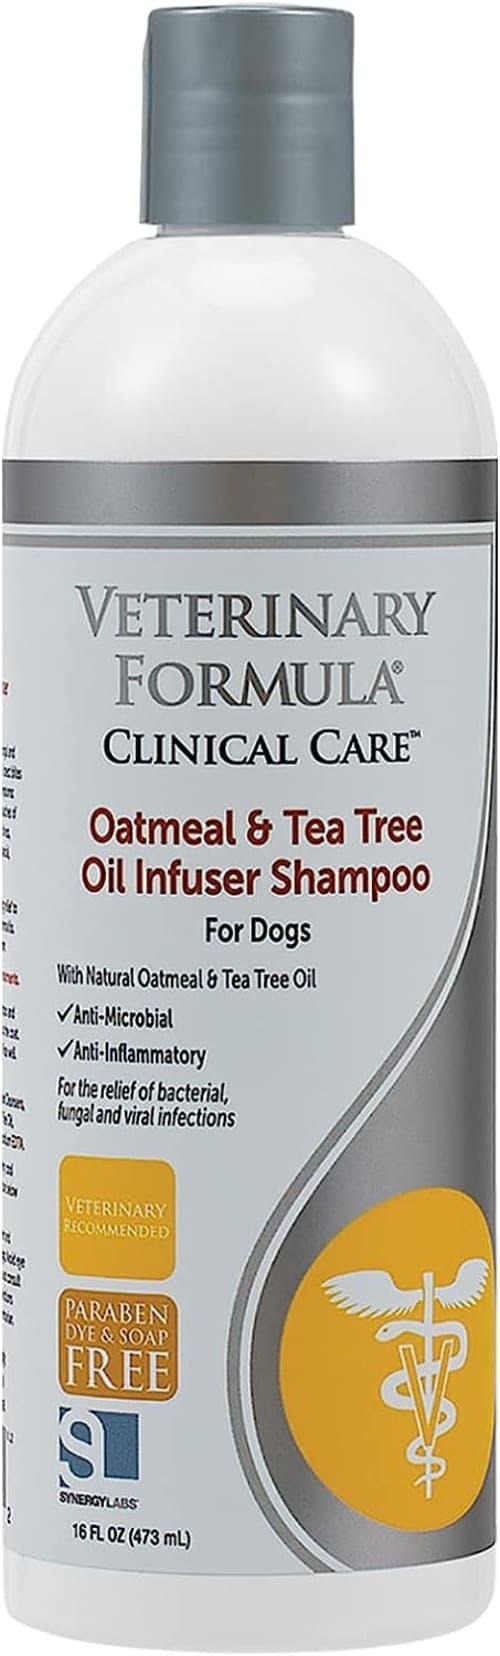 Veterinary Formula Clinical Care Dog Shampoo review